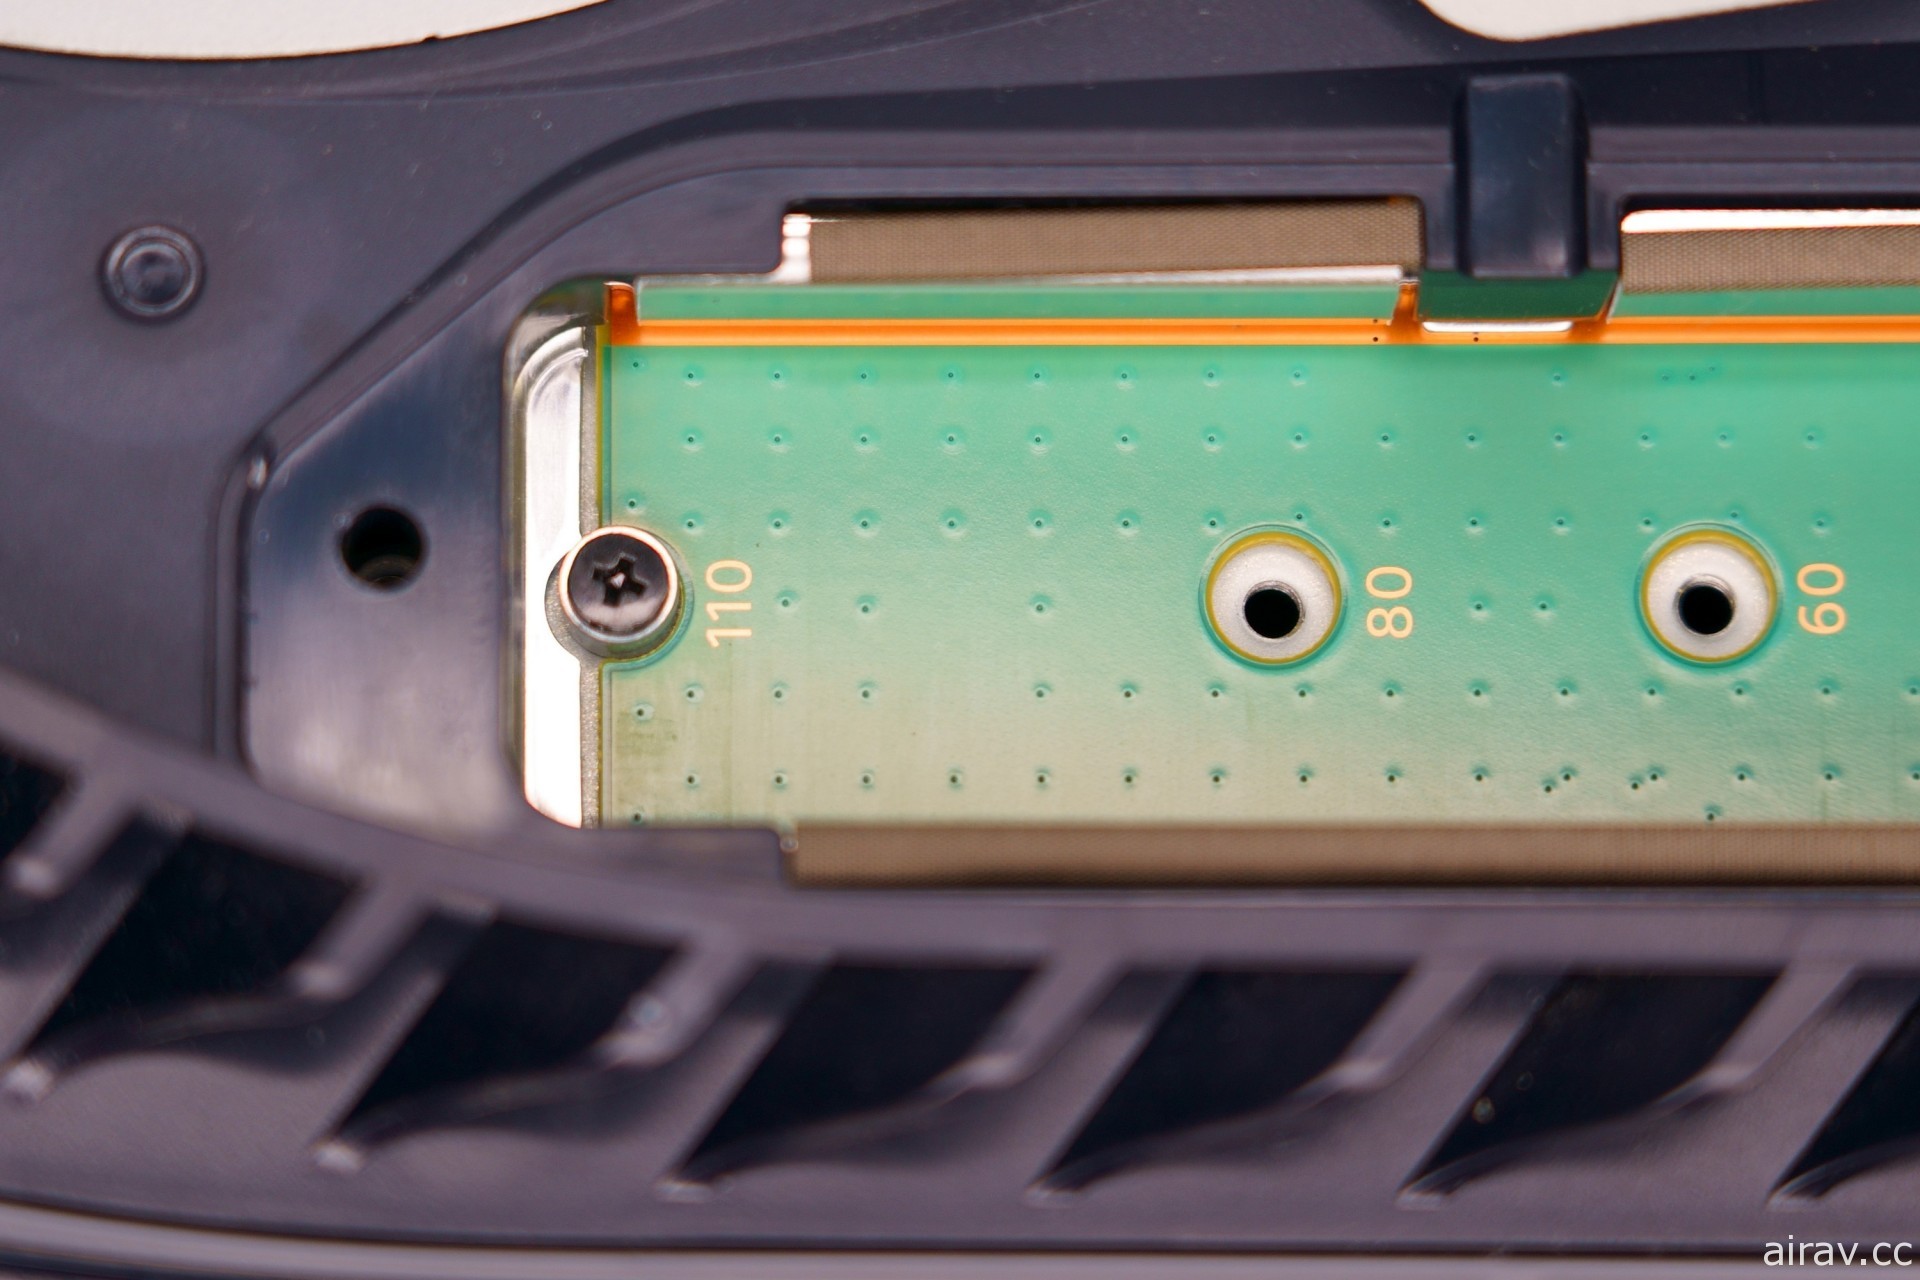 希捷 FireCuda 530 SSD 散熱器版 4TB PS5 實裝開箱報導 超高速大容量暢享遊戲樂趣